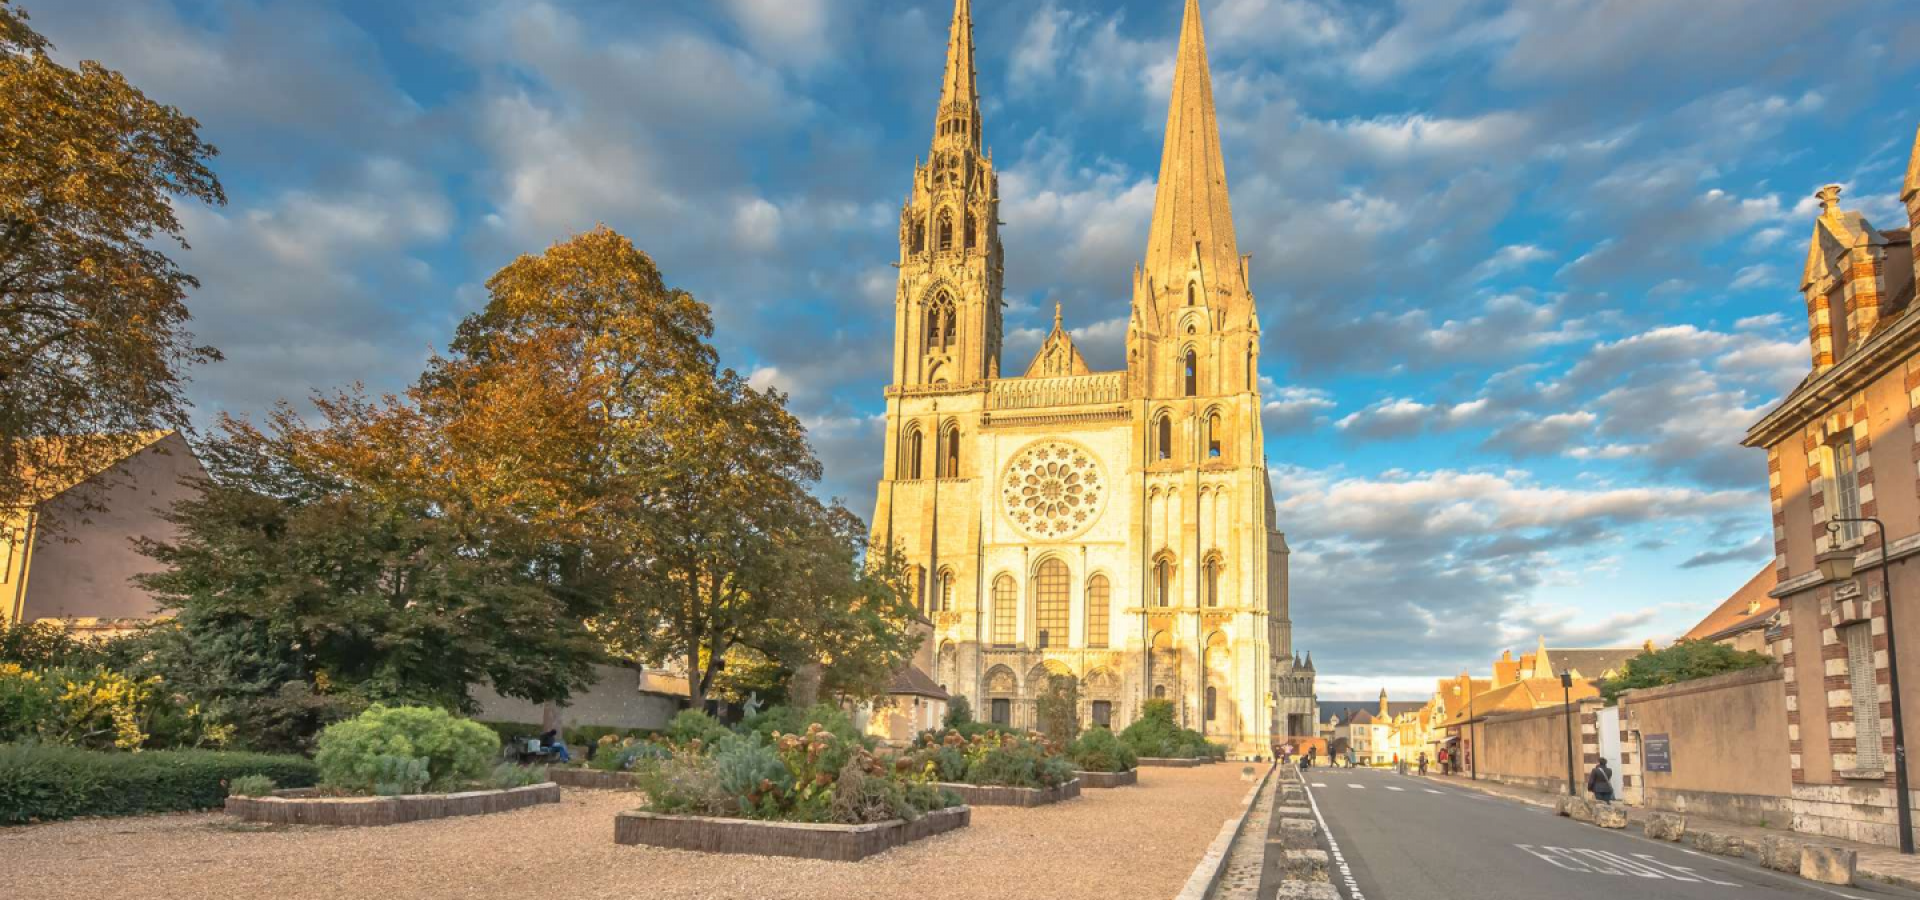 Image Etude pour personnes avec handicap moteur à Chartres (Eure-et-Loir)